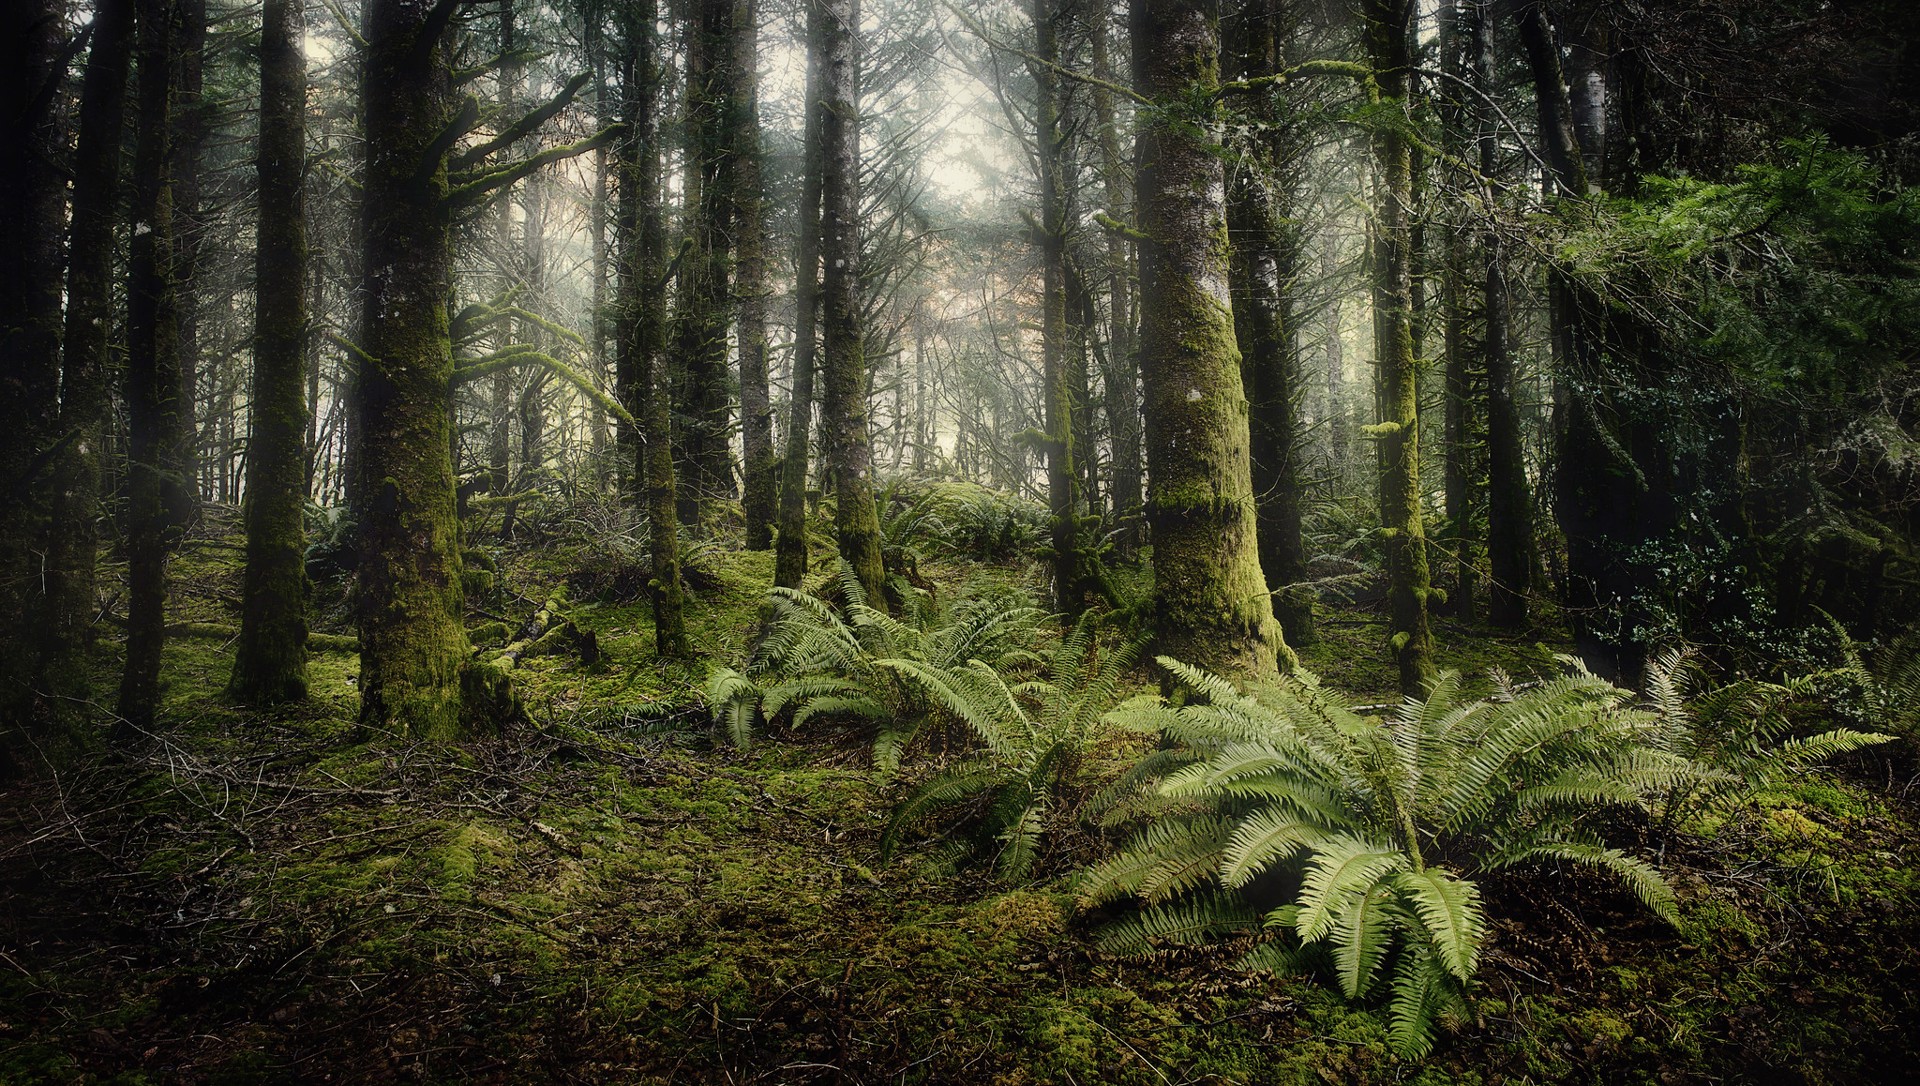 Ft. Stevens Forest by Jody Miller